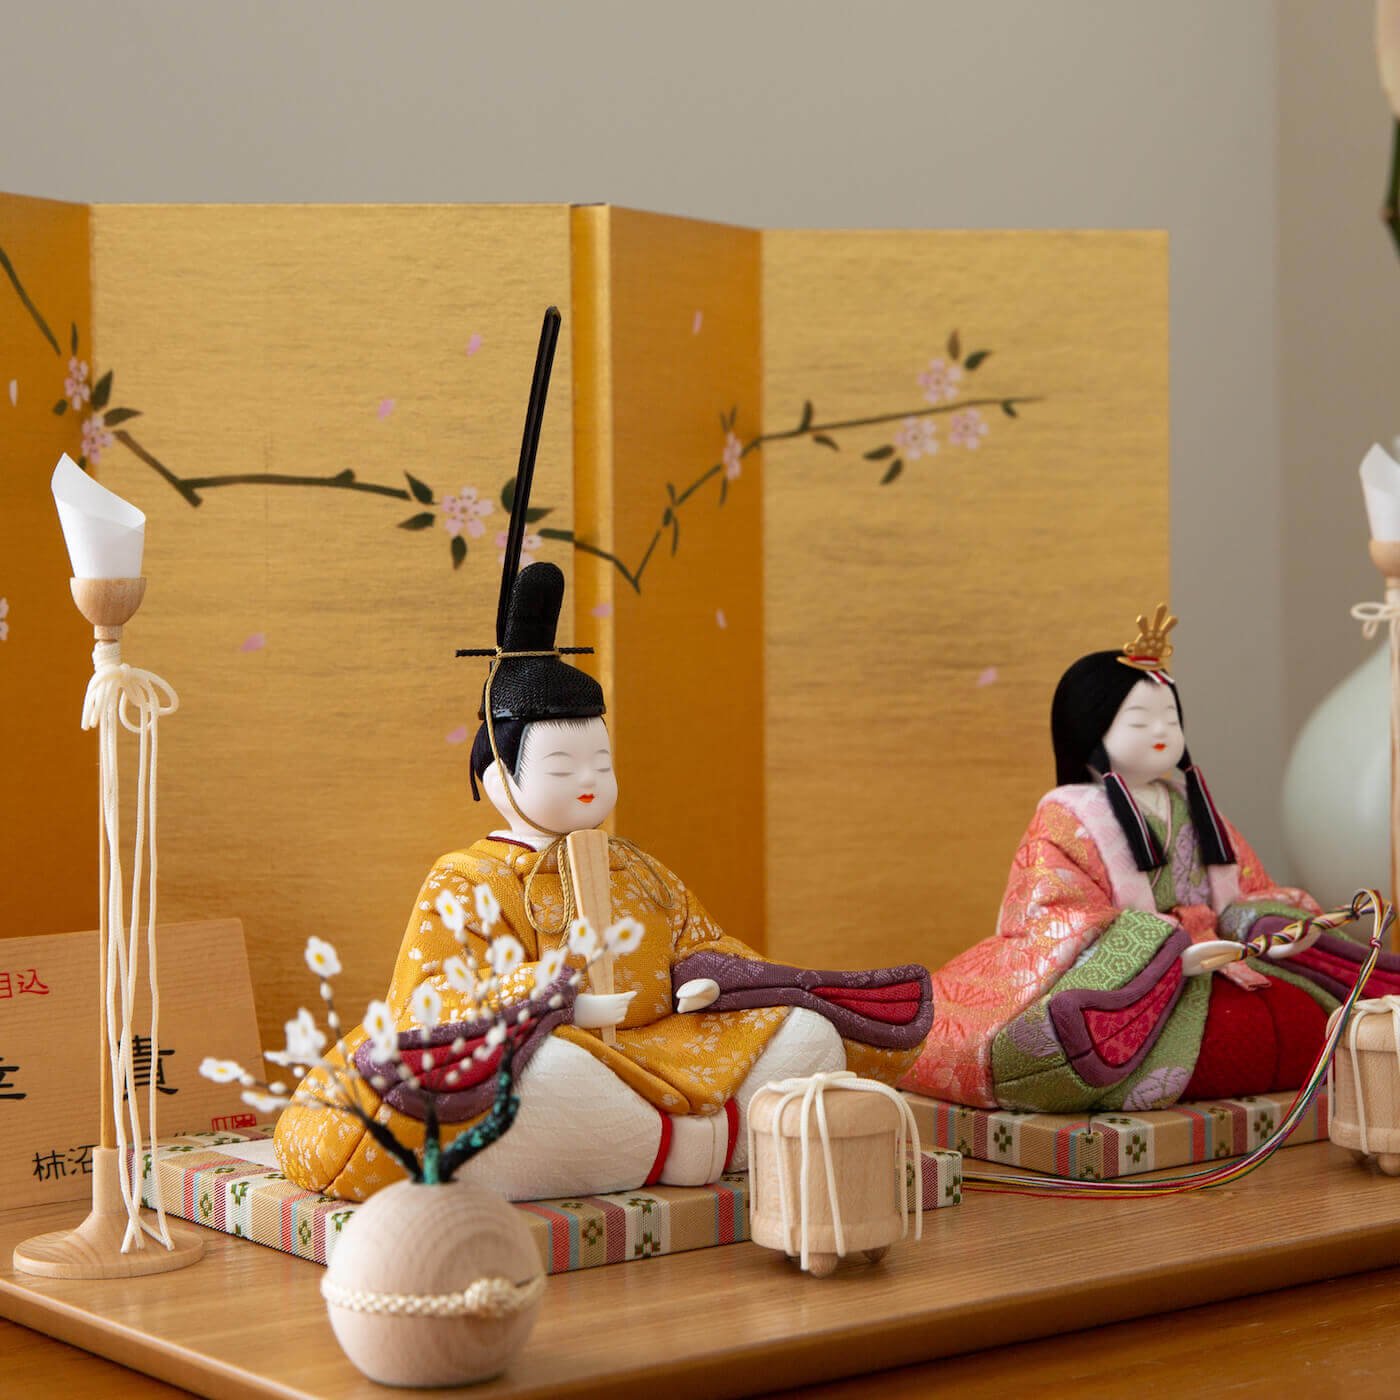 是非ご自宅へお飾りくださいハンドメイド作品/東京木目込み人形の高級特大羽子板